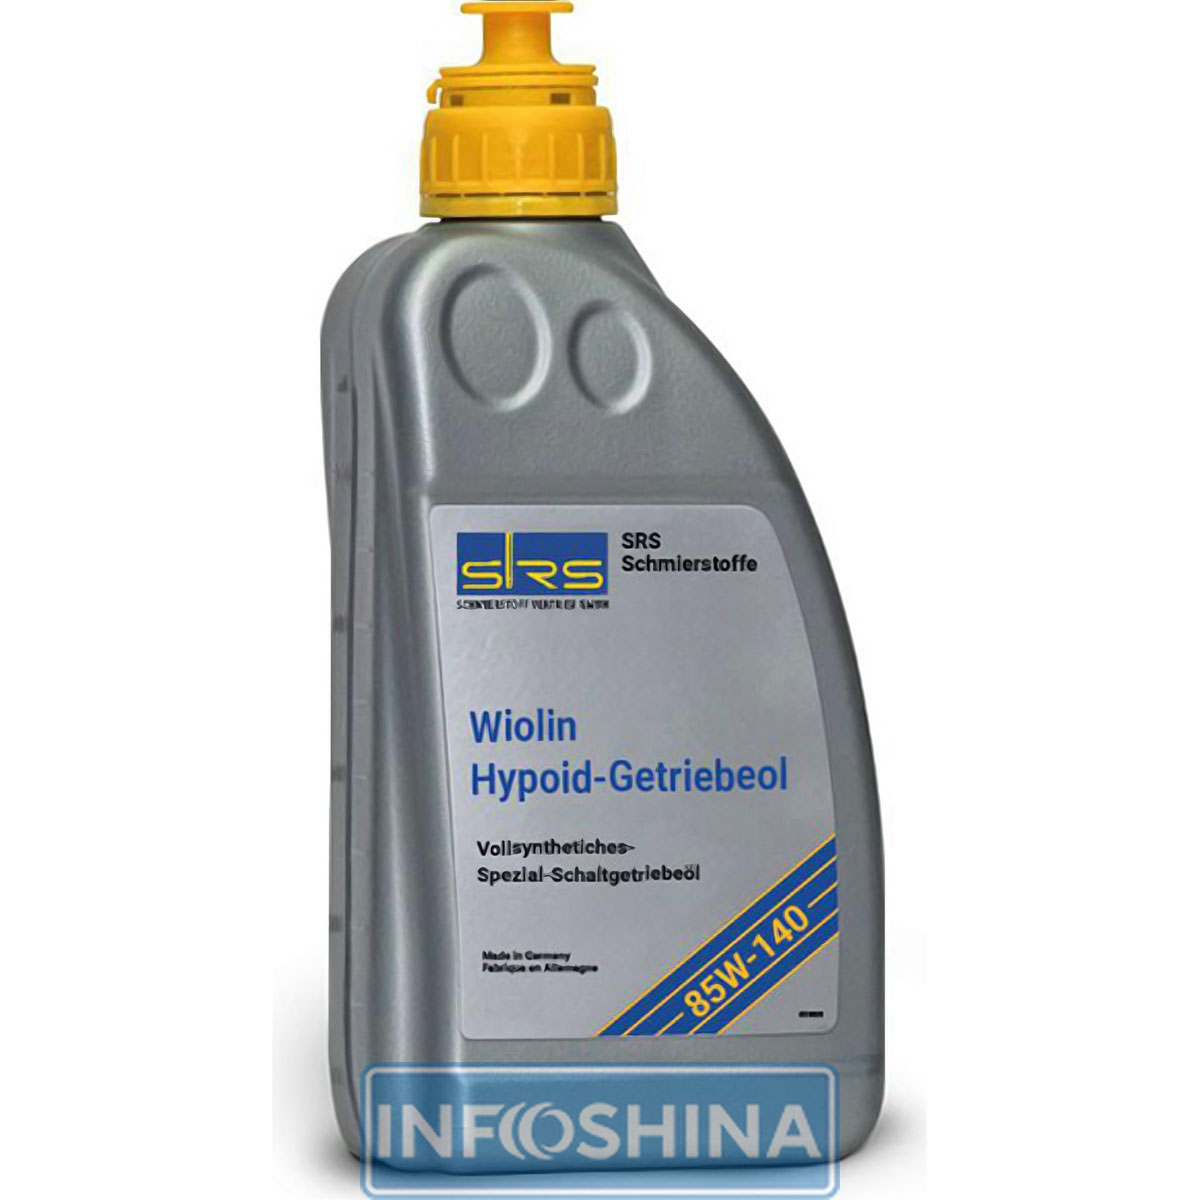 Купить масло SRS Wiolin Hypoid-Getriebeol 85W-140 (1л)